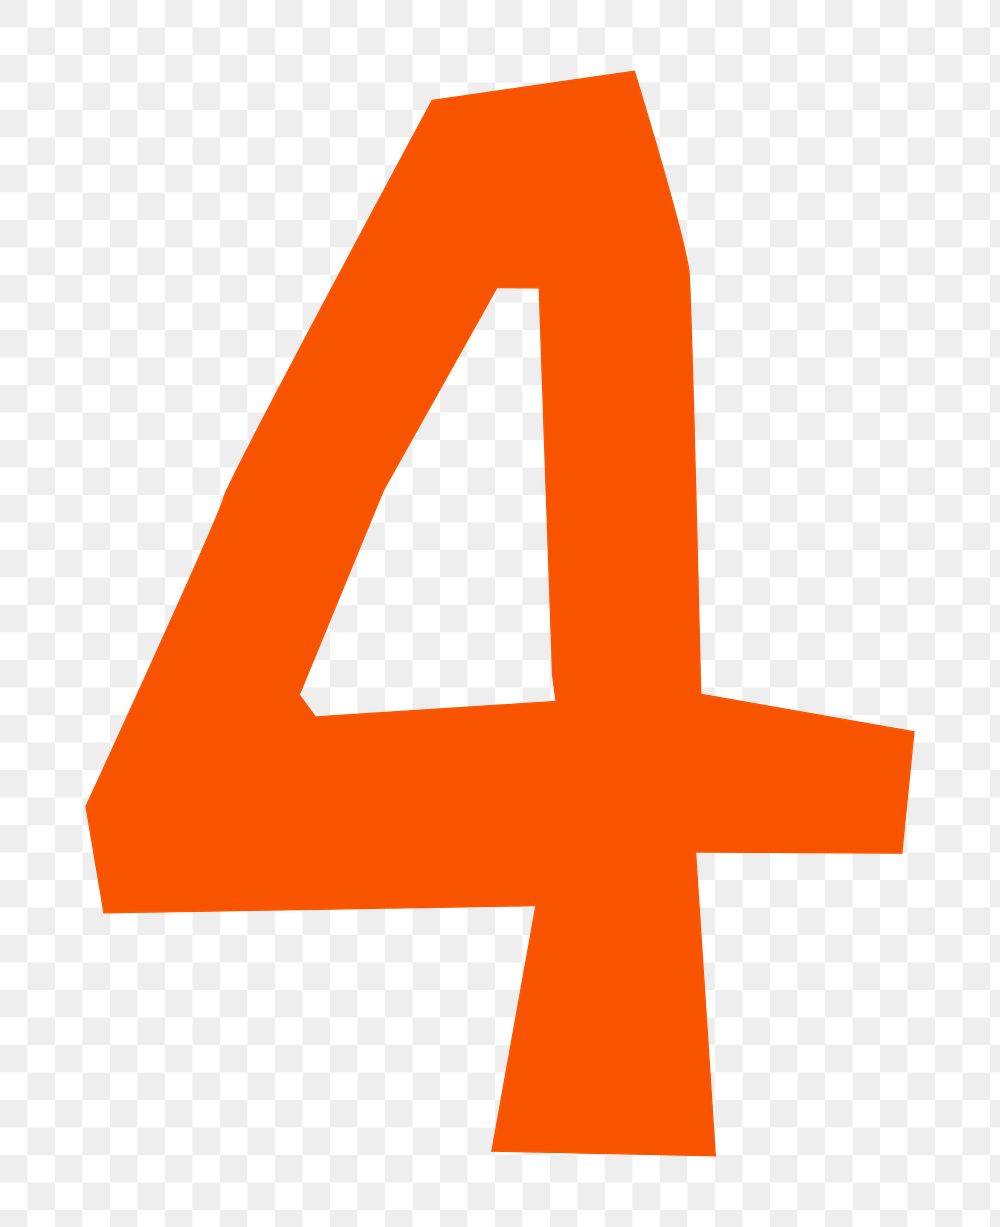 Number 4 png in orange paper cut shape font, transparent background